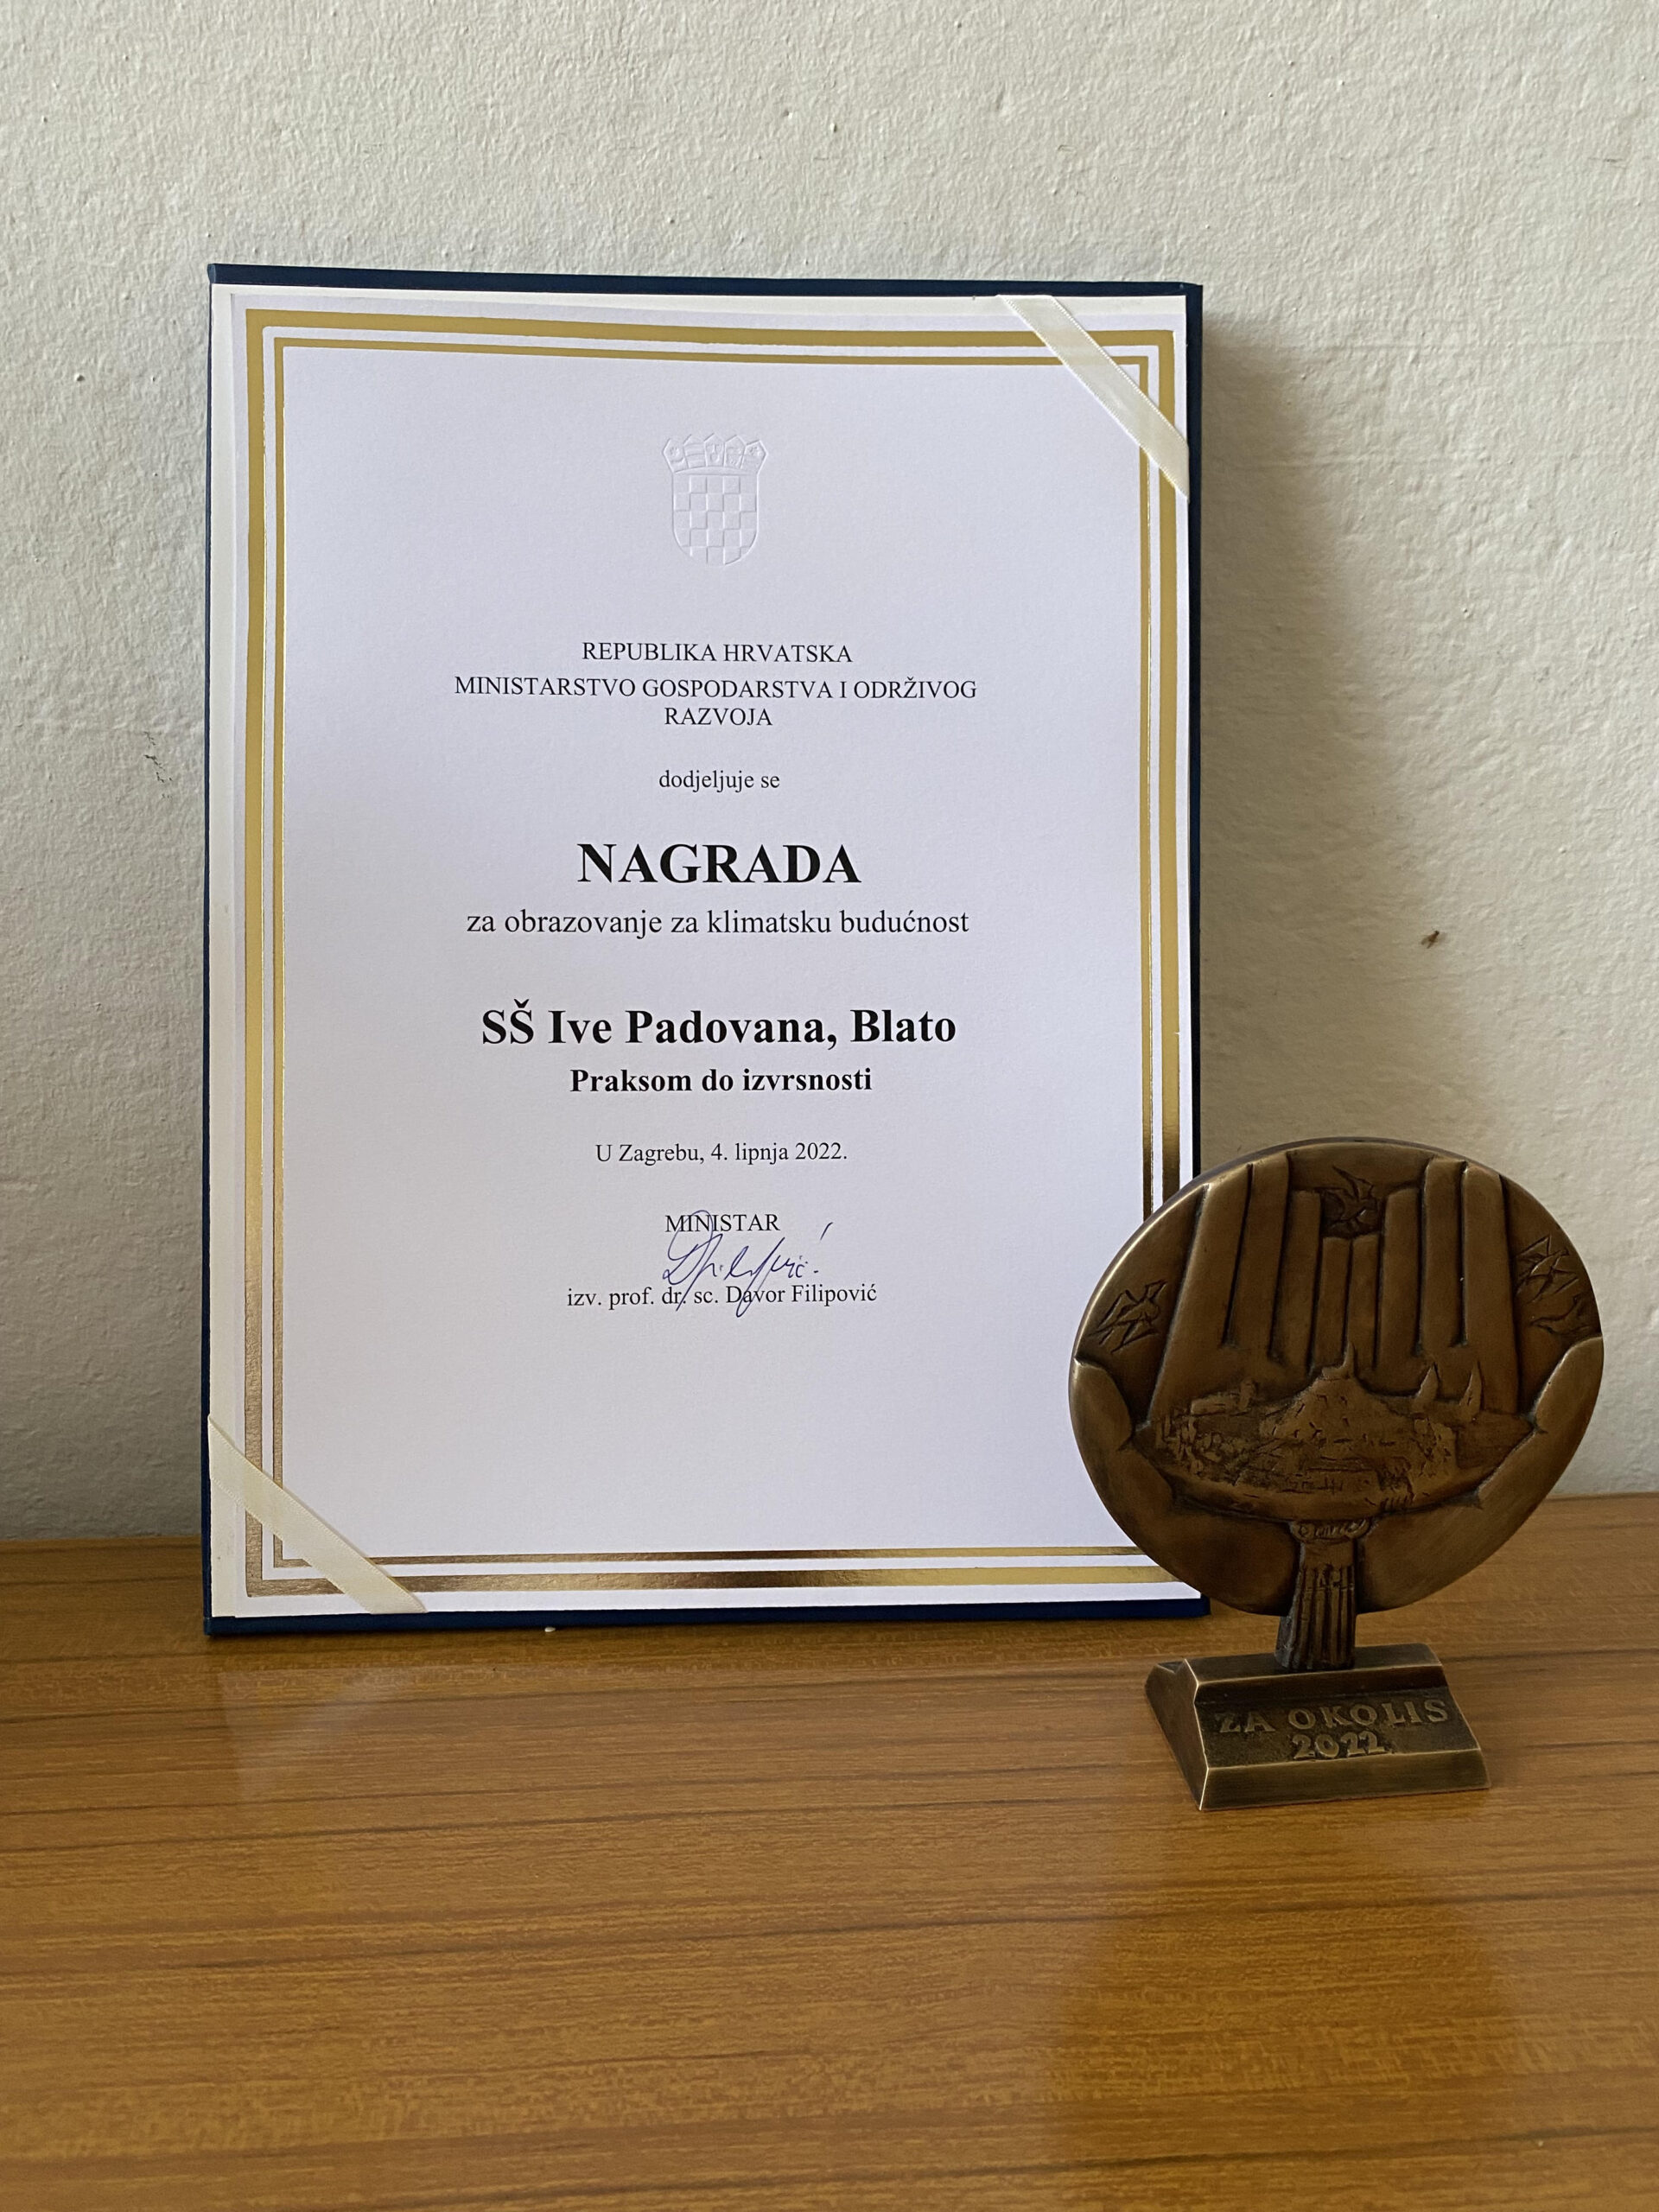 Dodjeljena nam je Nacionalna nagrada za zaštitu okoliša.